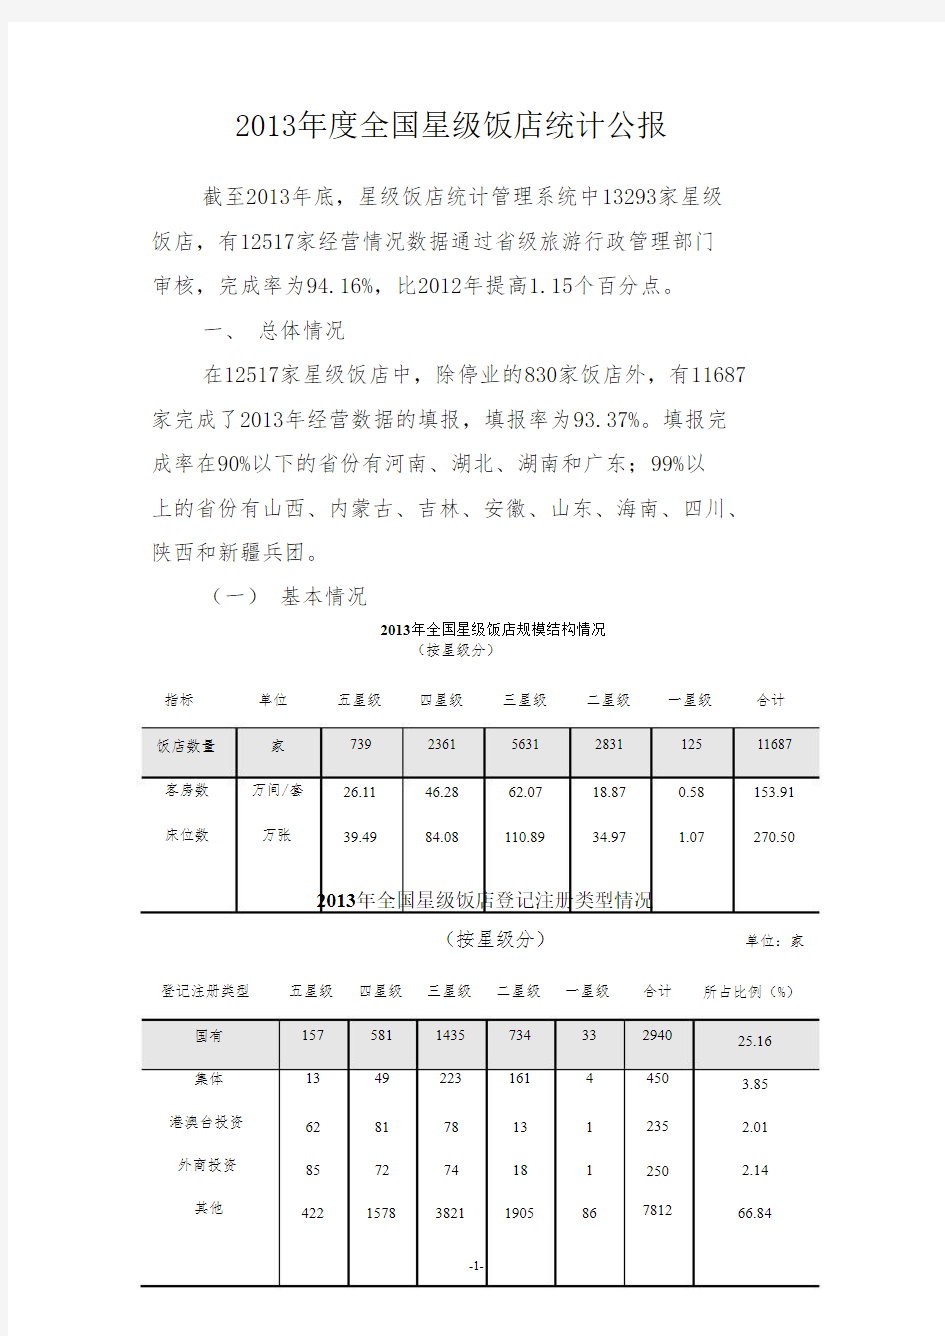 2013年中国星级饭店统计公报